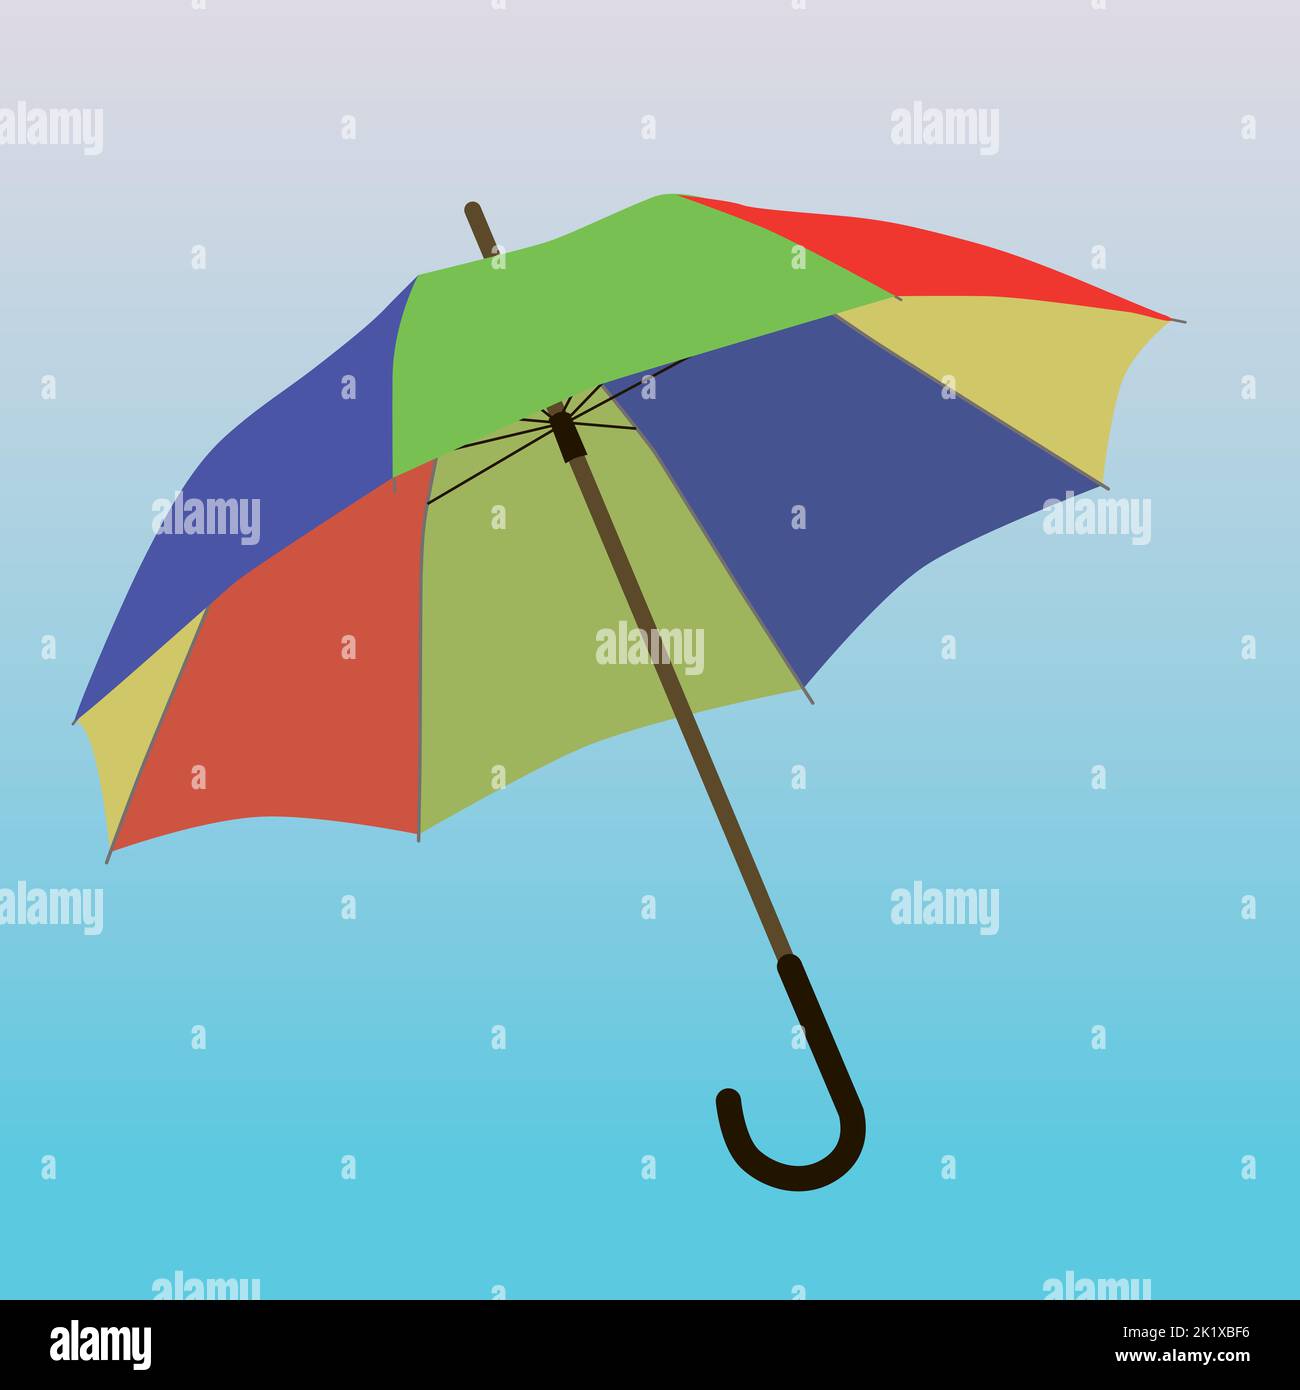 Illustration vectorielle d'un parapluie coloré. Les couleurs sont le rouge, le bleu jaune et le vert. Le parasol est incliné et l'arrière-plan est un dégradé bleu Illustration de Vecteur